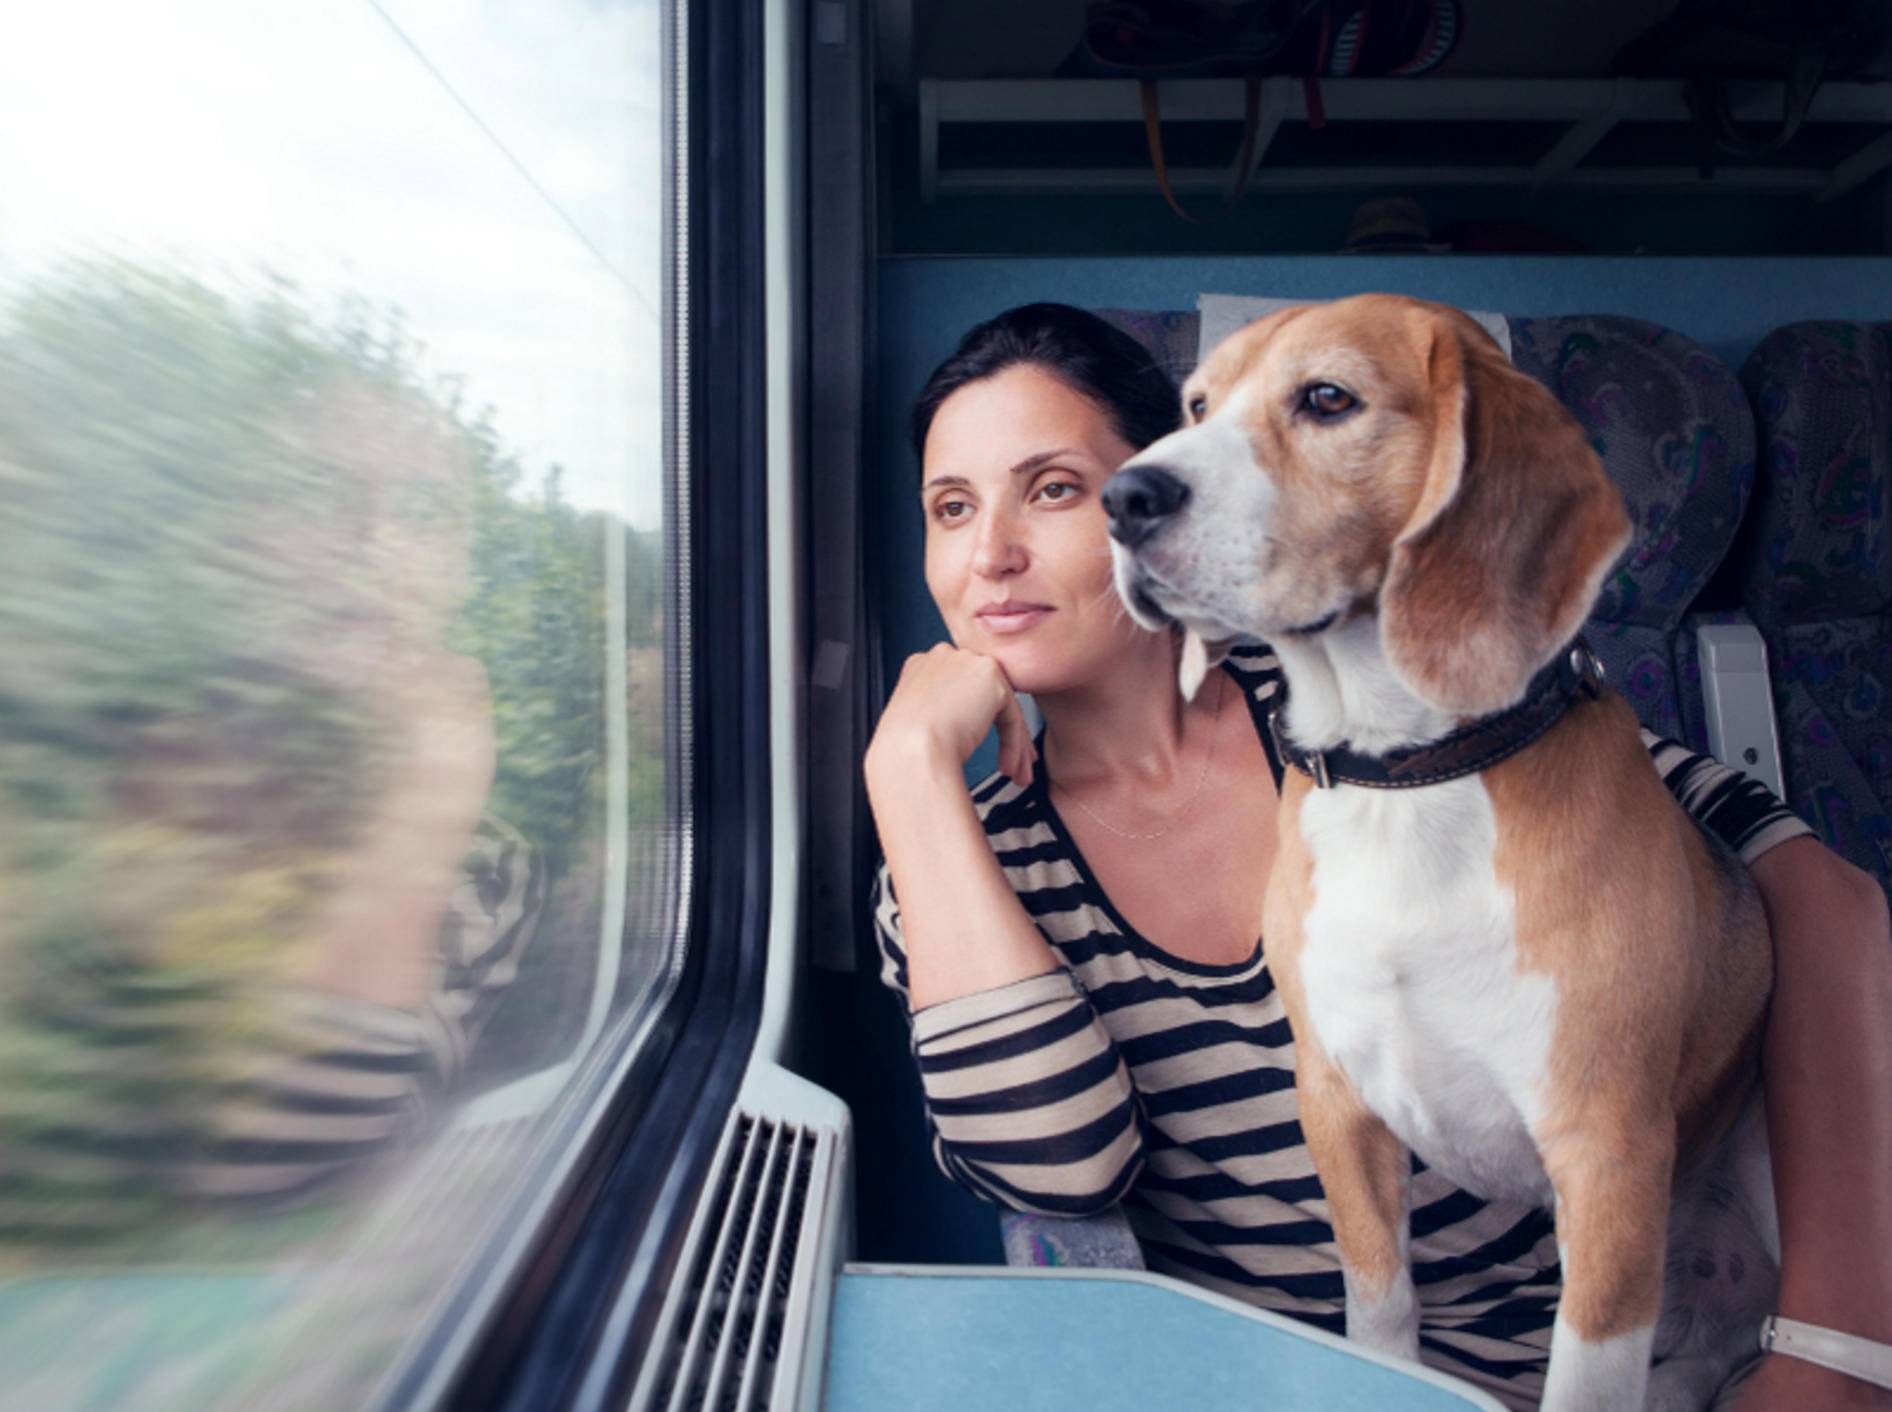 Streng genommen, müsste dieser süße Zug-Beagle eigentlich einen Maulkorb tragen – Shutterstock / Soloviova Liudmyla